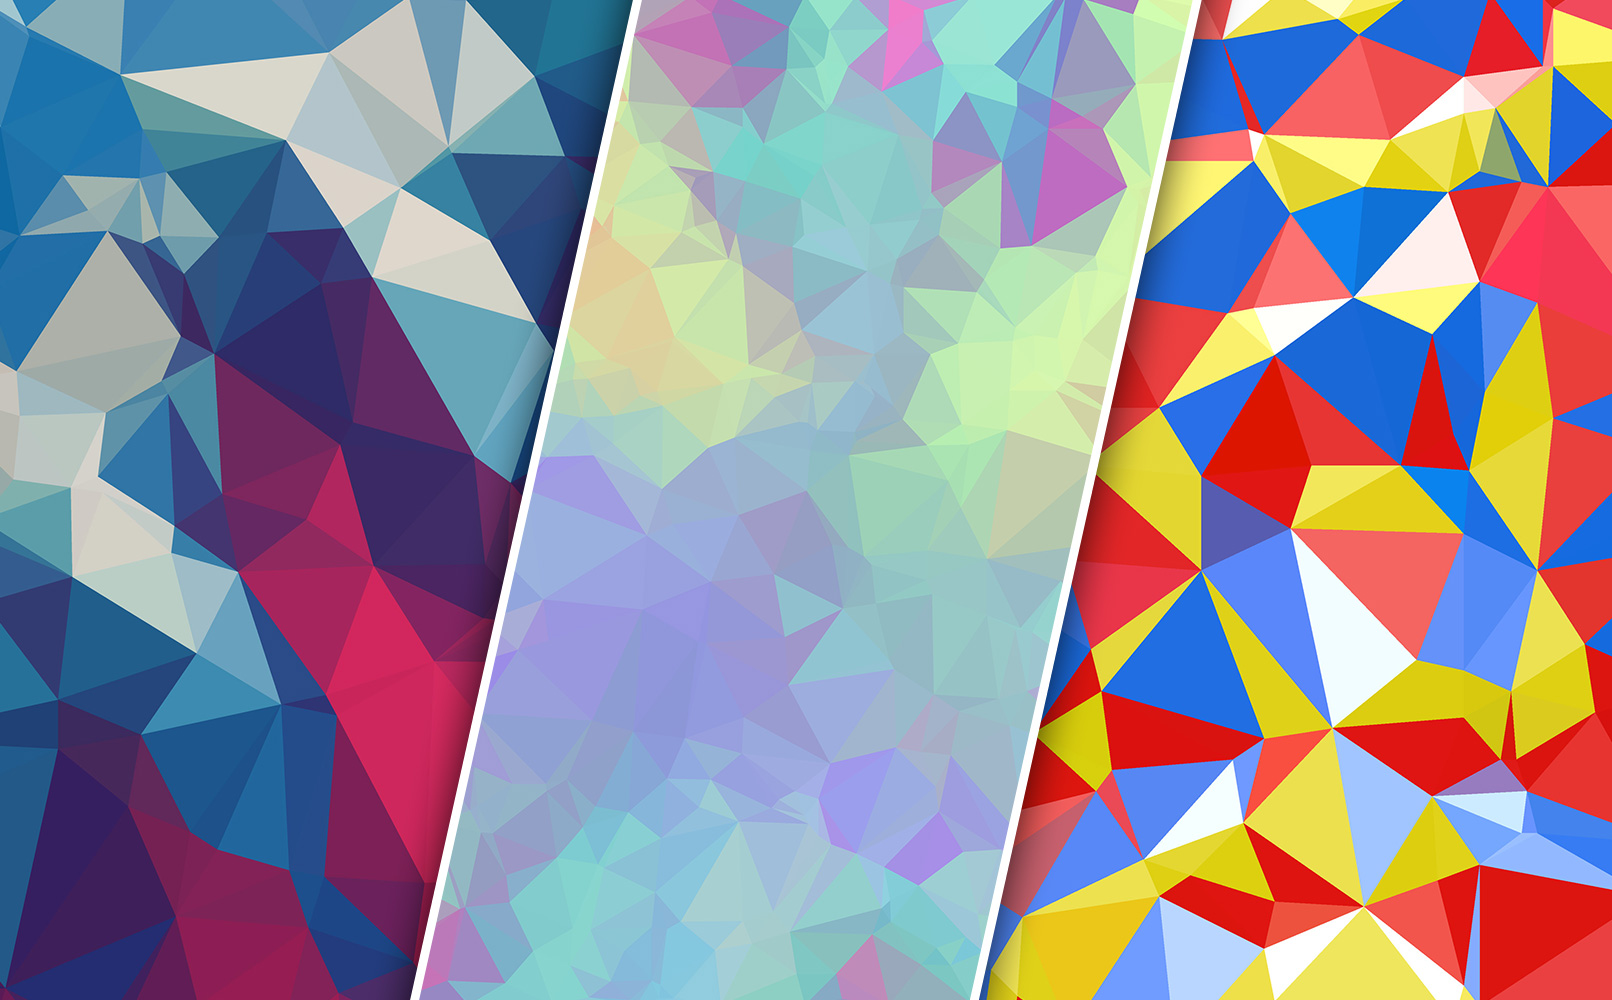 Polygon Backgrounds in verschiedenen Farben